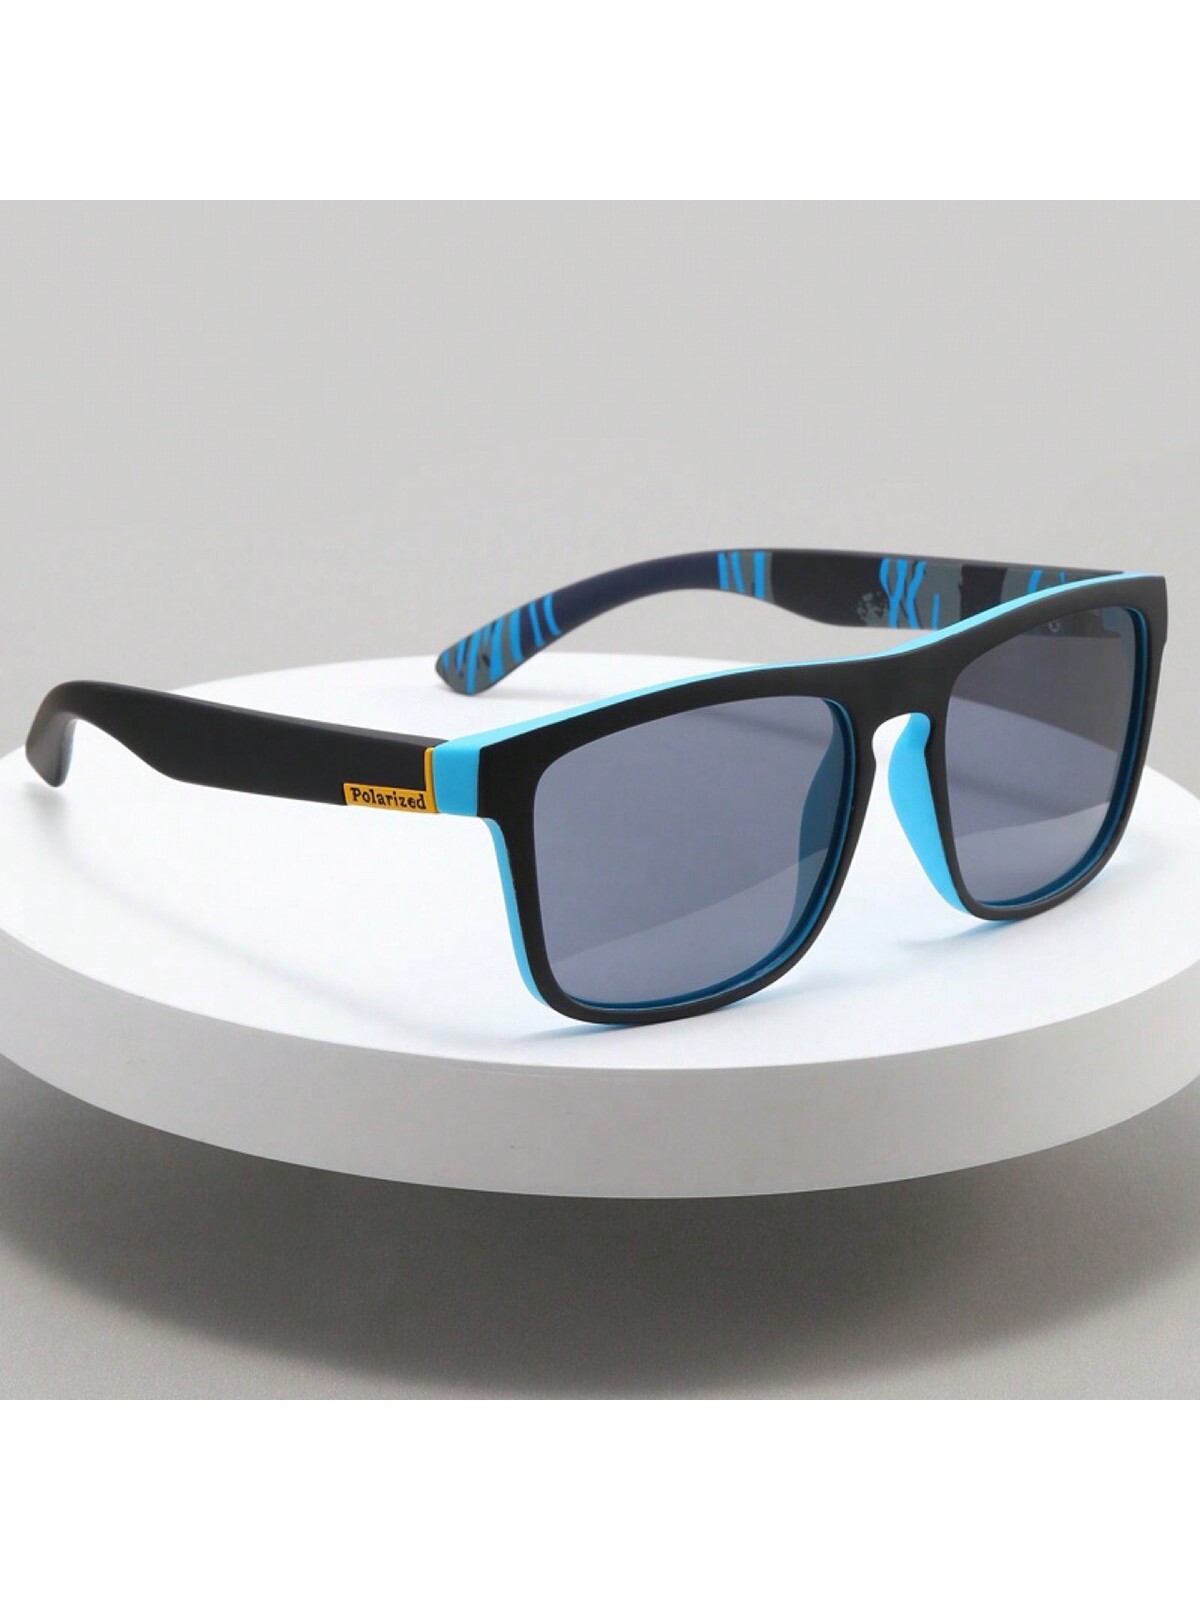 Поляризованные солнцезащитные очки D731 для спорта солнцезащитные очки для мотокросса мотоциклетные очки для спорта на открытом воздухе езды по бездорожью езды на велосипеде диртбайке мо